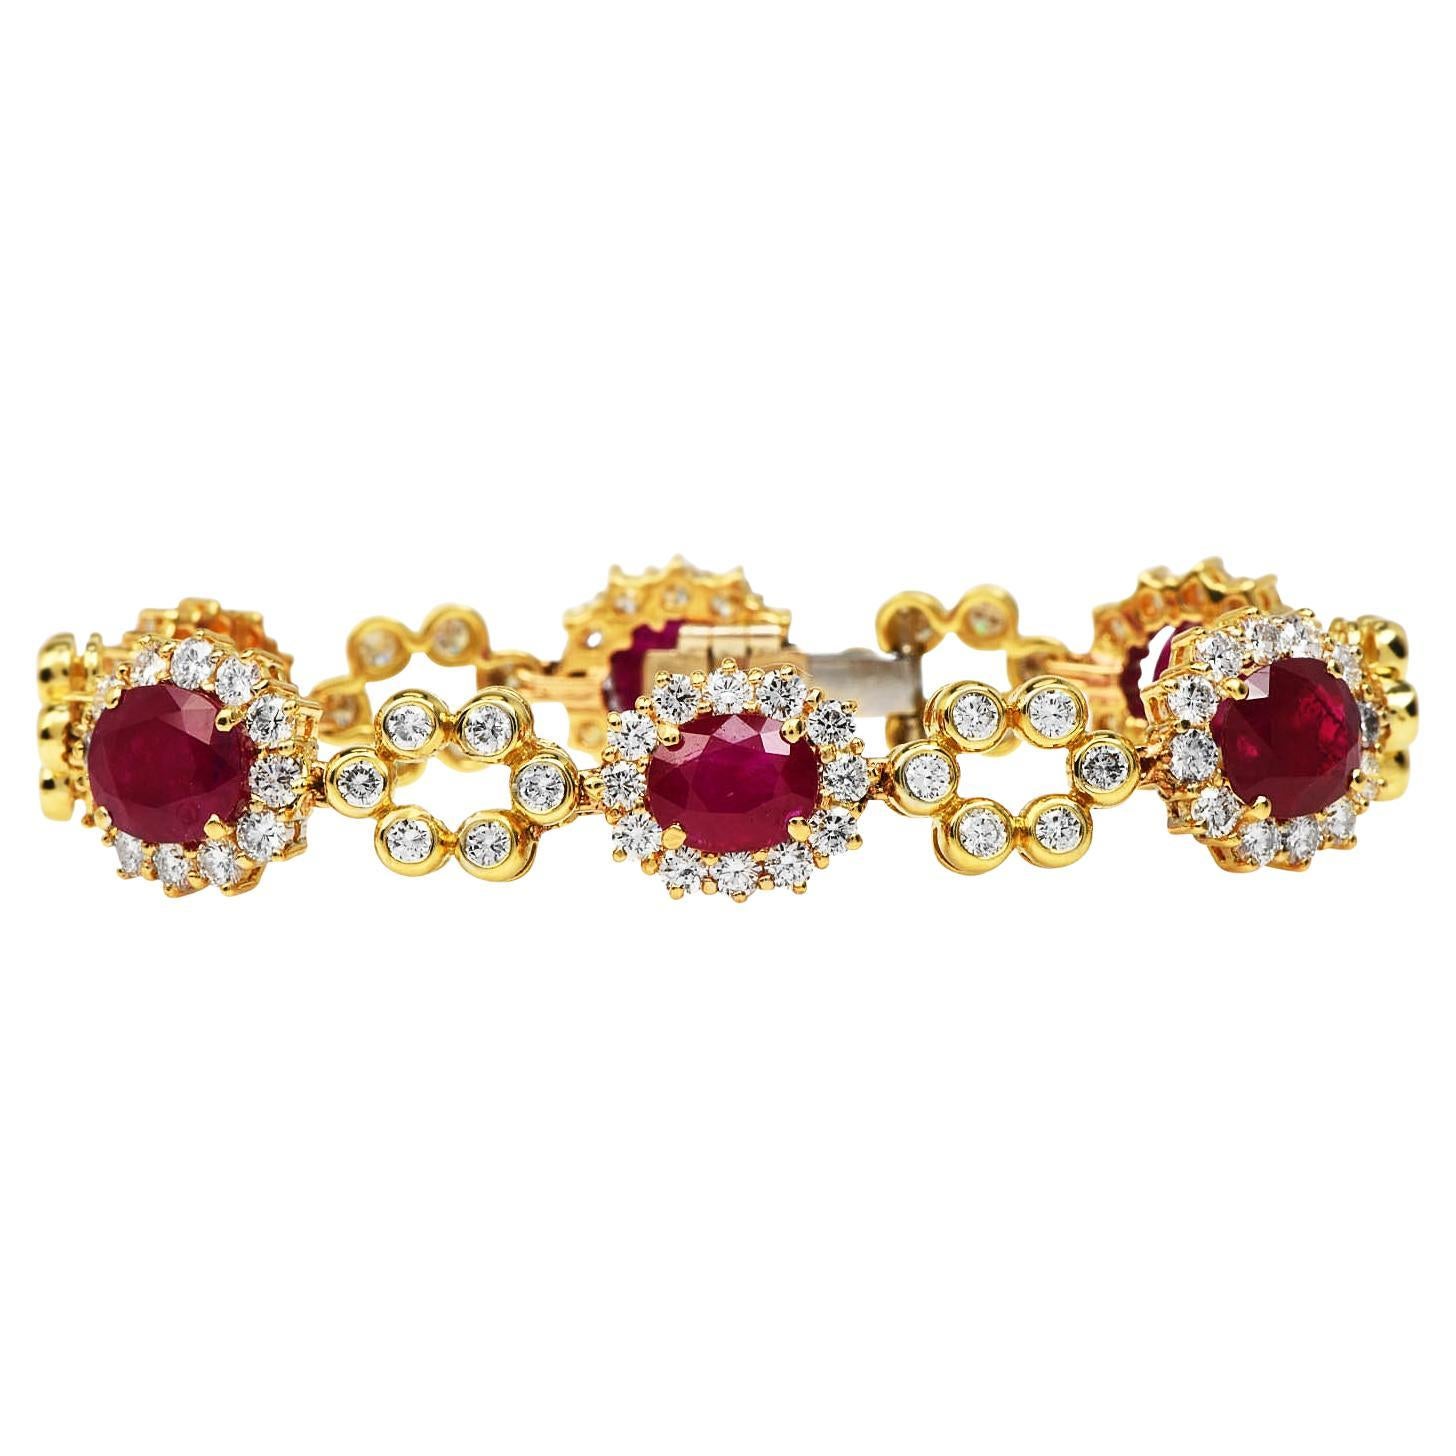 Bracelet à maillons en or jaune 18 carats, orné de diamants et de rubis, avec une fleur en forme de halo, datant des années 1980.